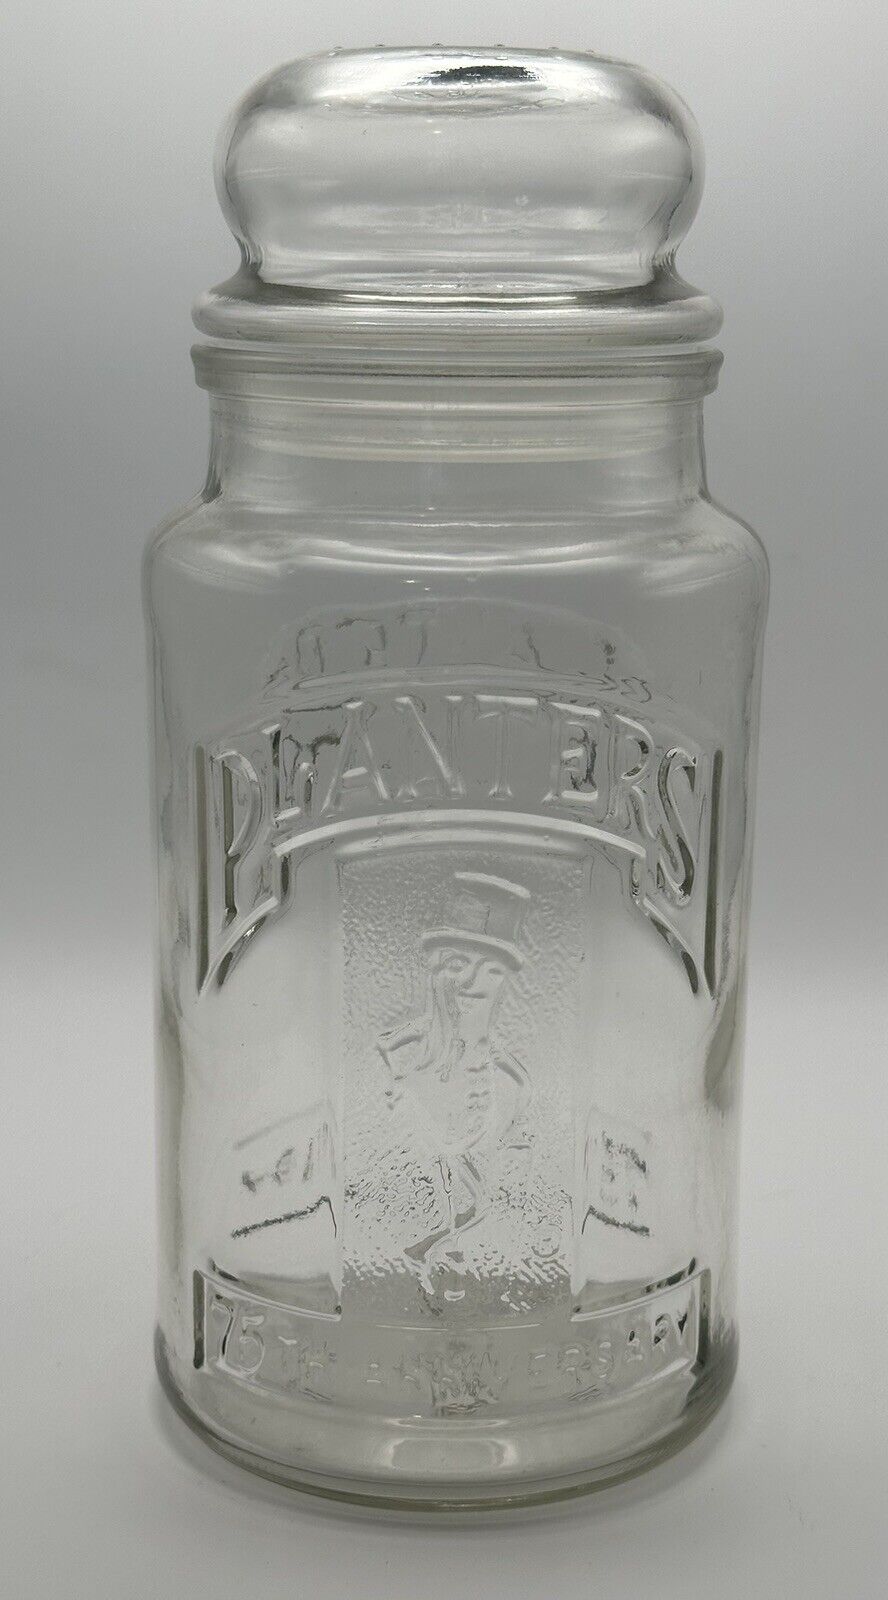 Vintage Planters Mr. Peanut 75th Anniversary 1906-1981 Glass Jar Embossed